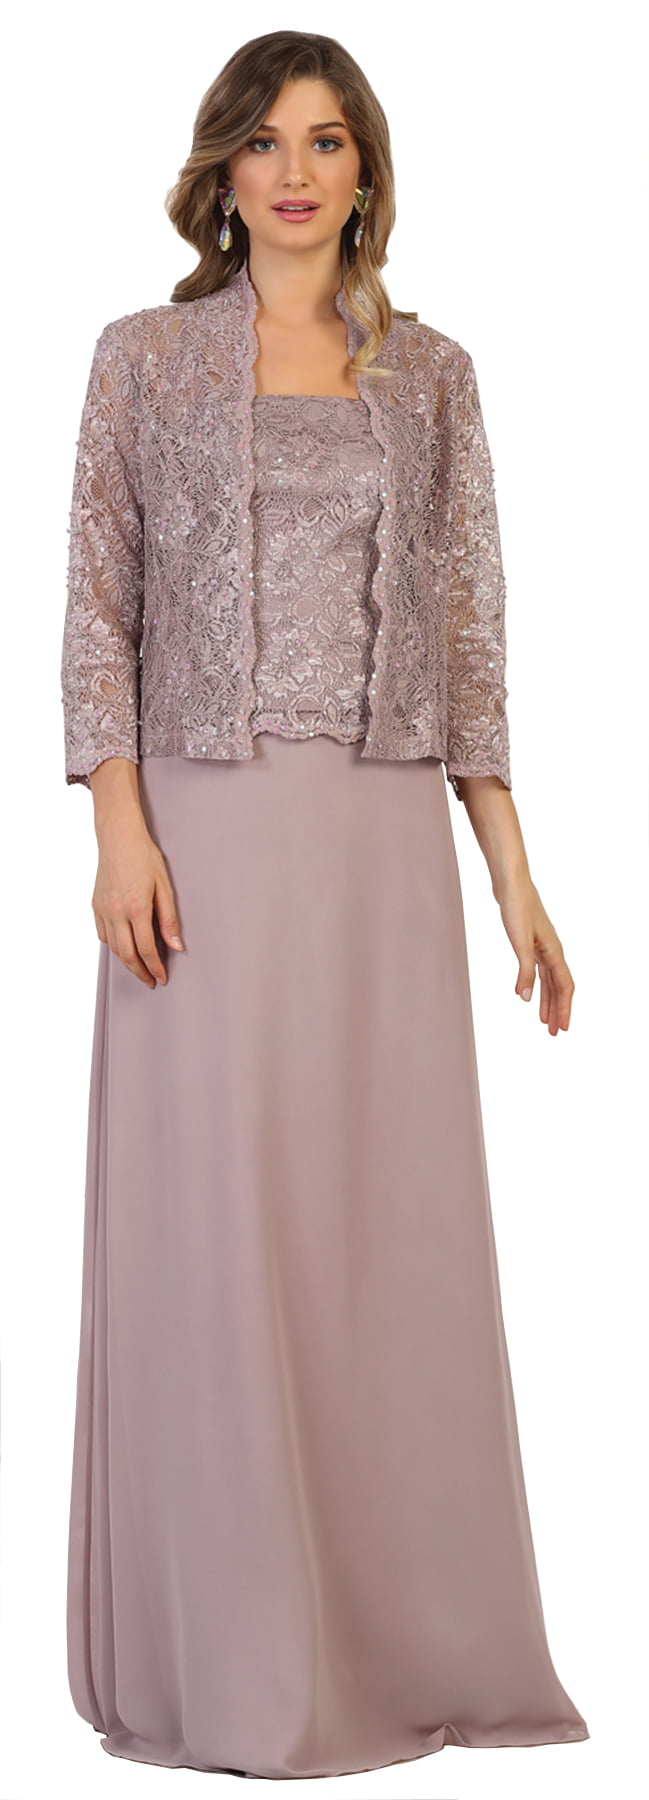 Formal Dress Shops - MOTHER OF THE BRIDE GROOM DRESS - Walmart.com ...